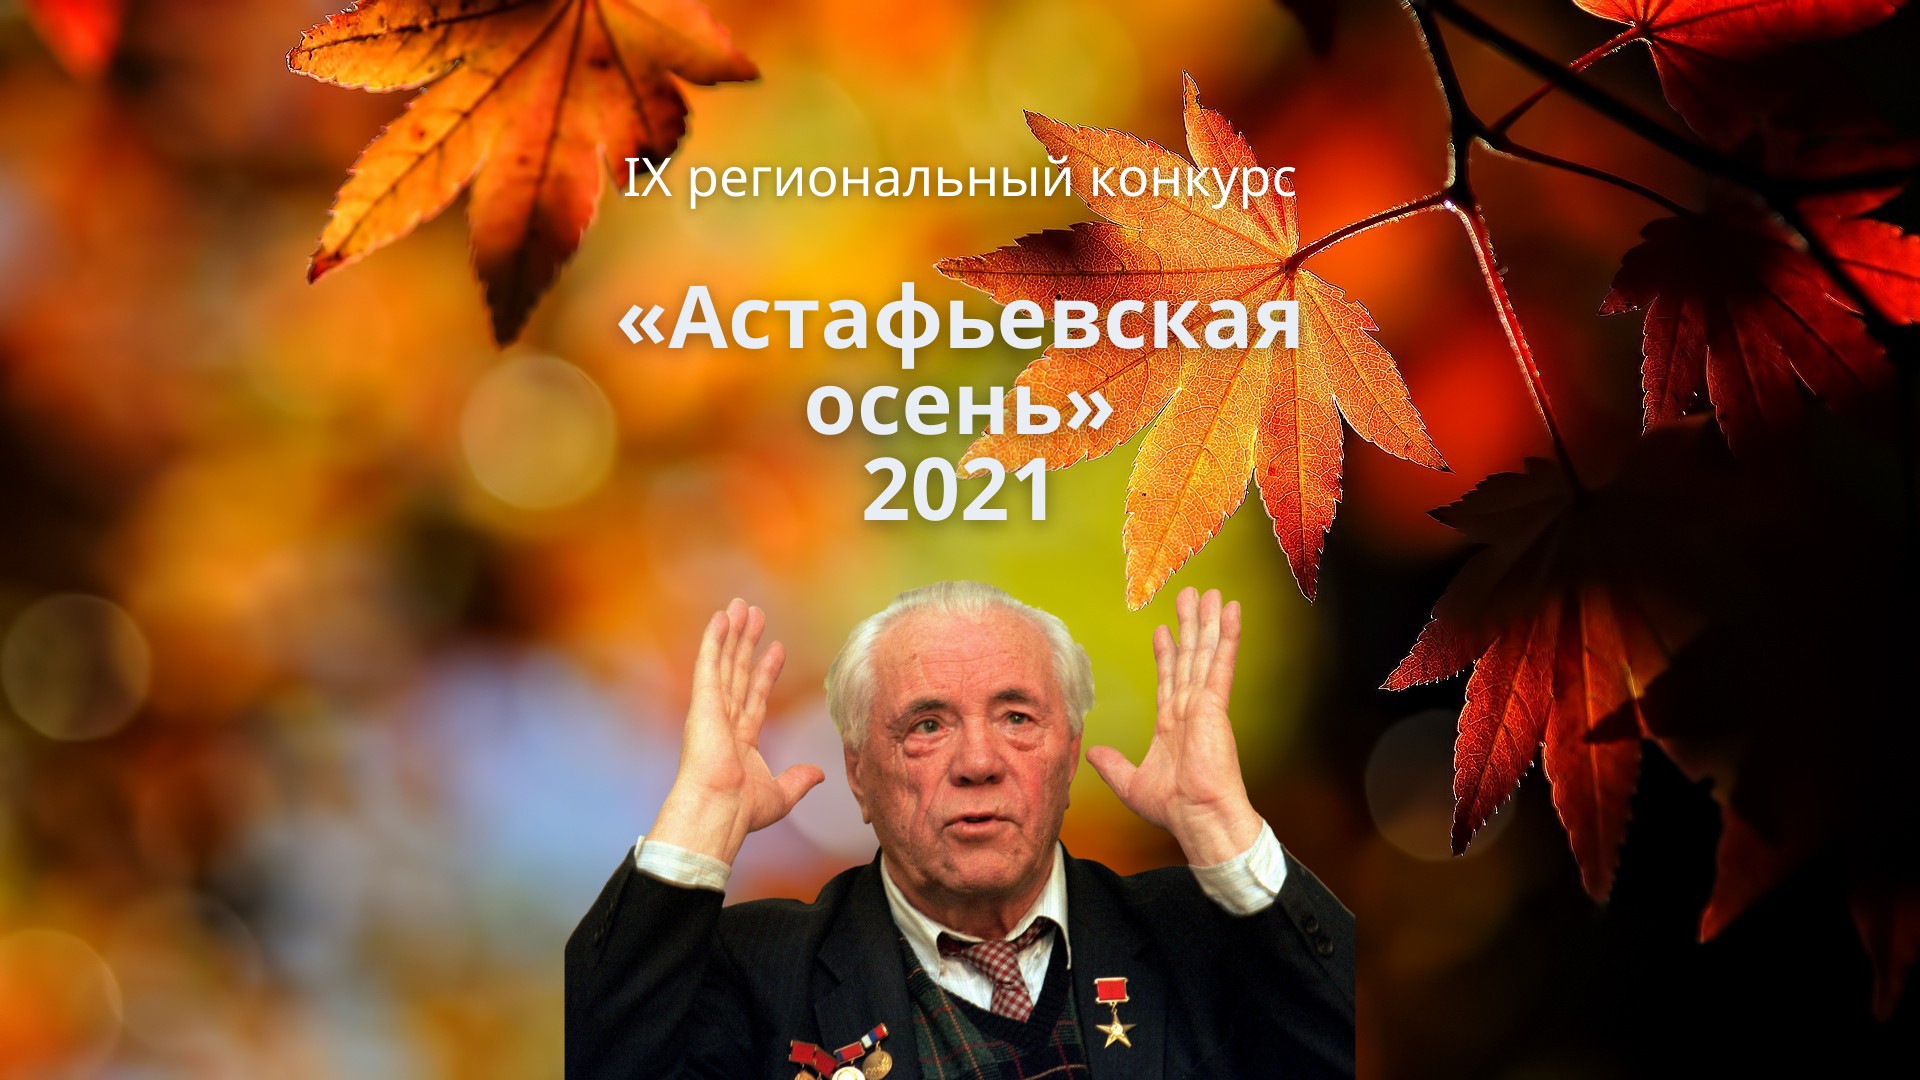 «Астафьевская осень» 2021